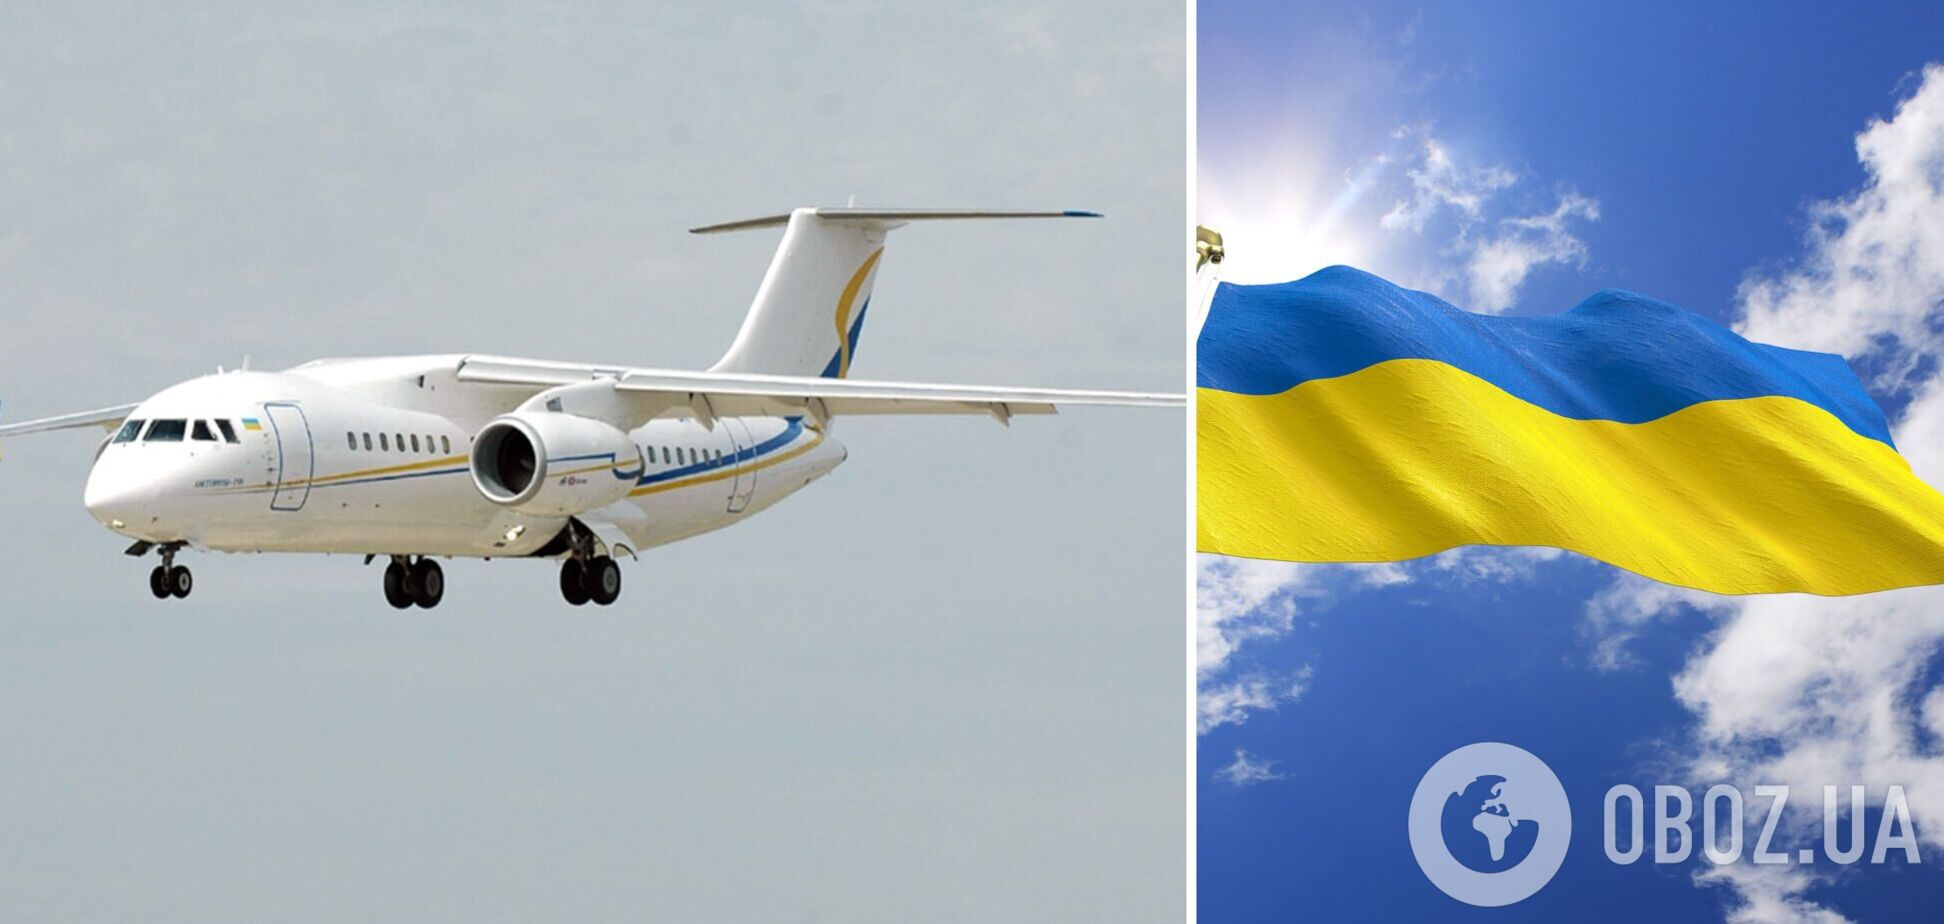 Сообщения о закрытии воздушного пространства Украины не соответствуют действительности